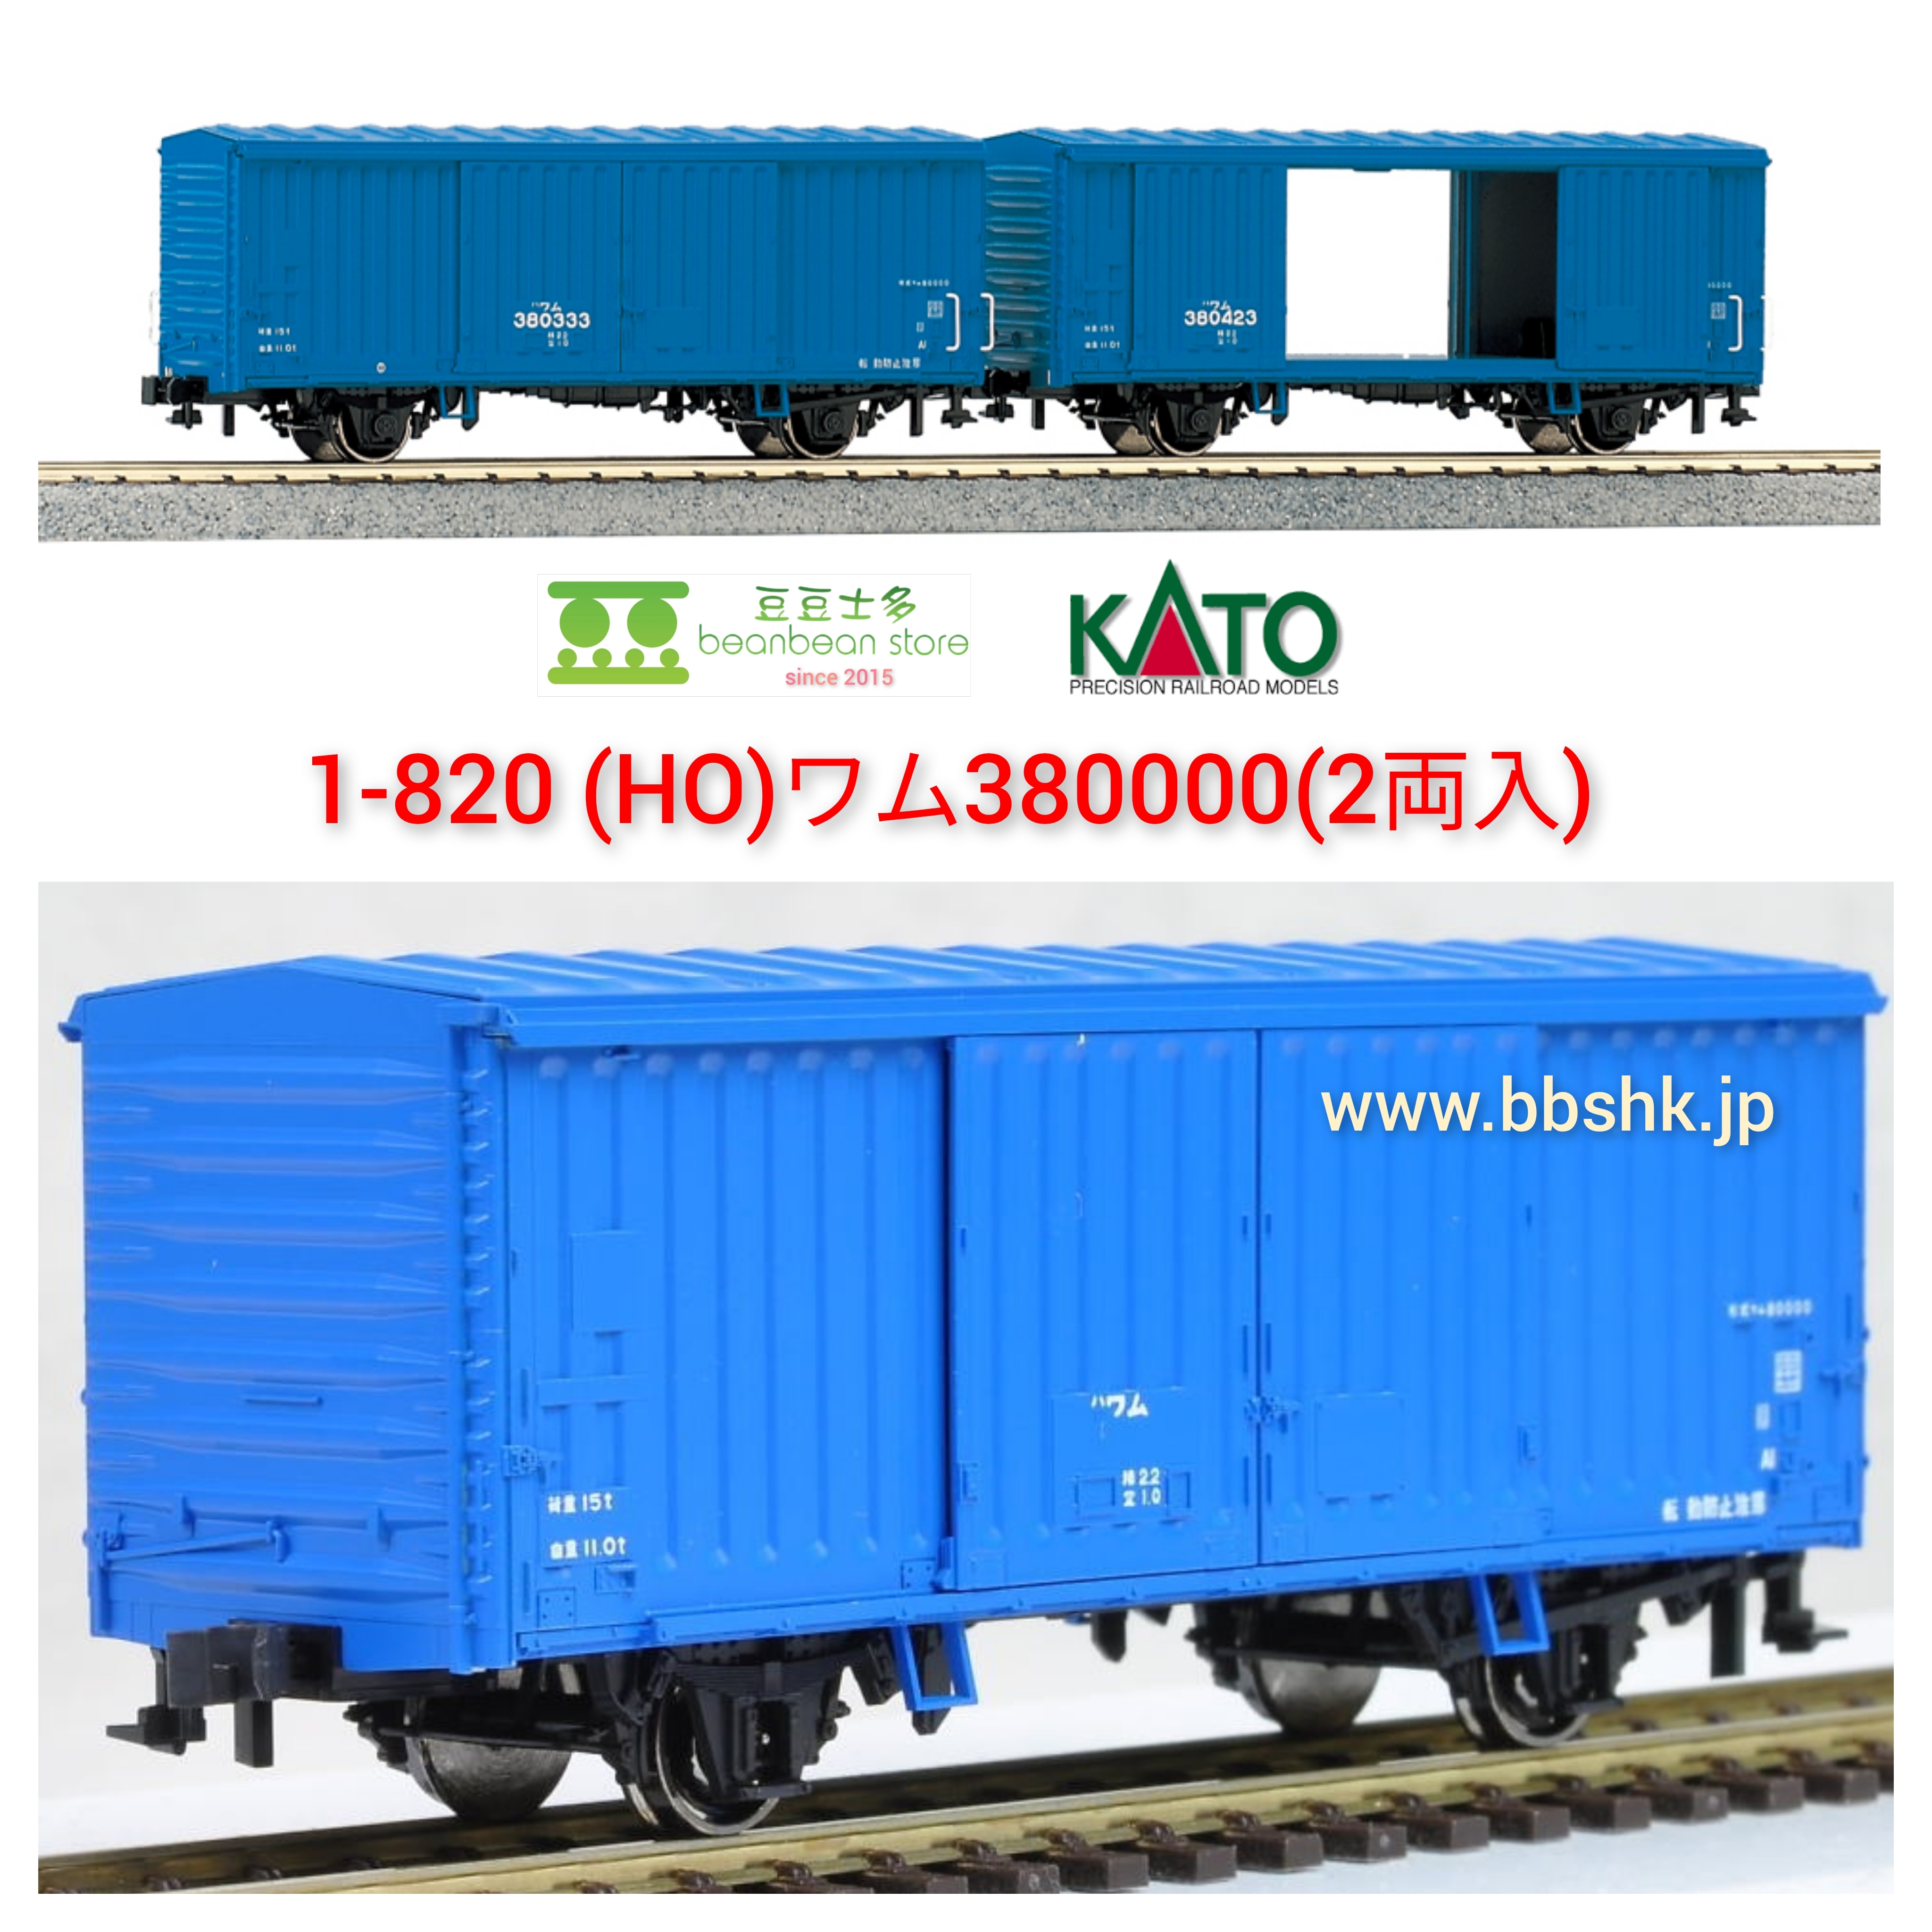 KATO 1-820 (HO) ワム380000 (2両入)